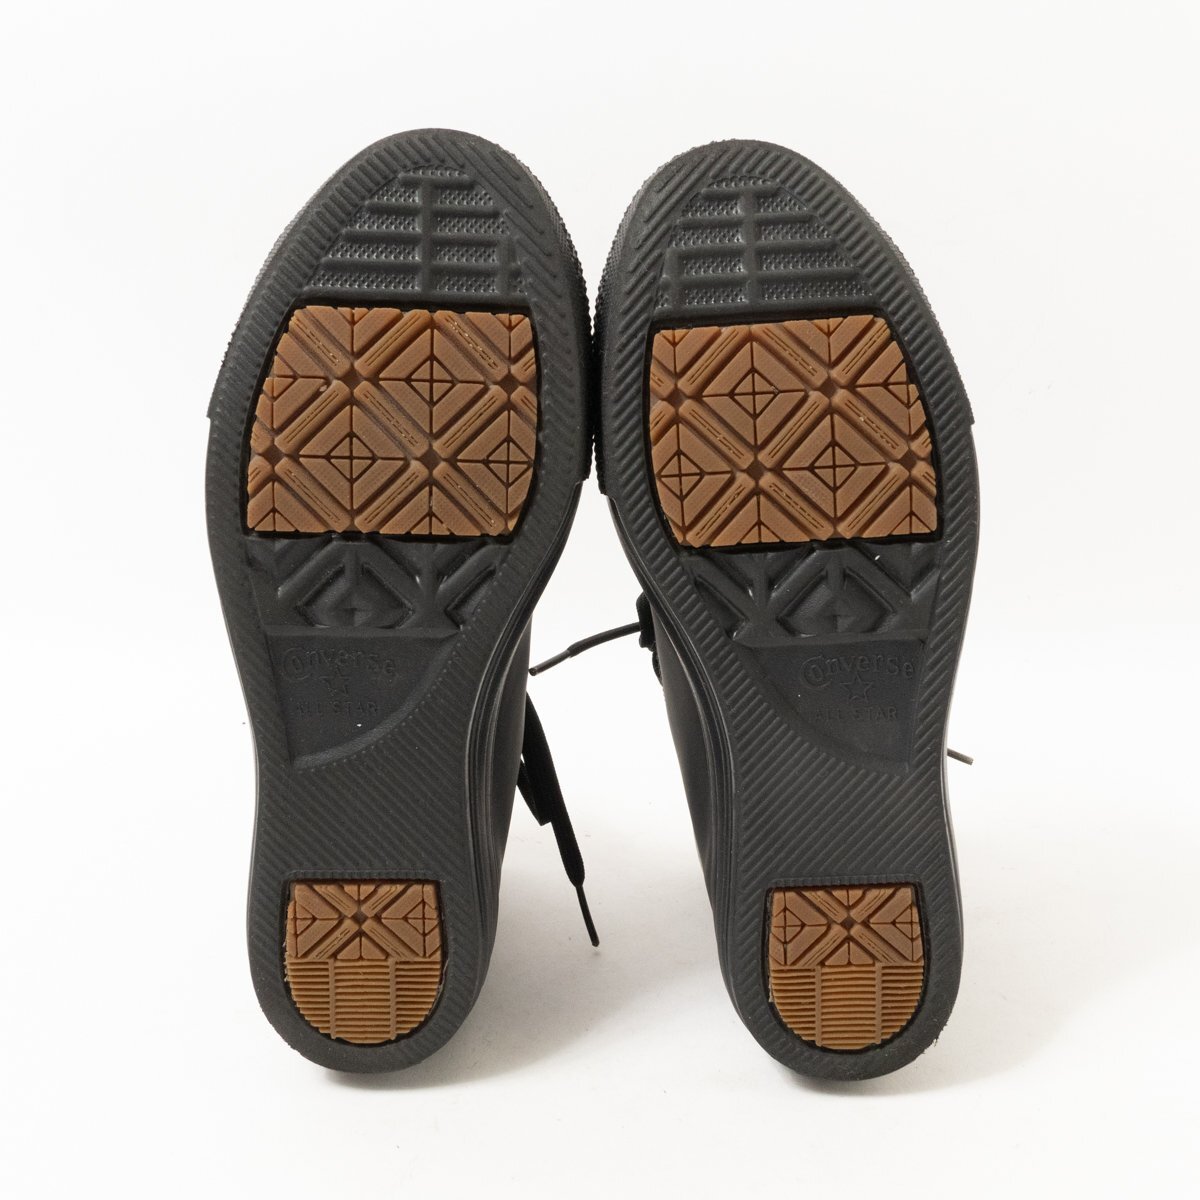 CONVERSE Converse ALL STAR все Star - ikatto резиновые сапоги спортивные туфли черный чёрный 24cm женский простой casual обувь 